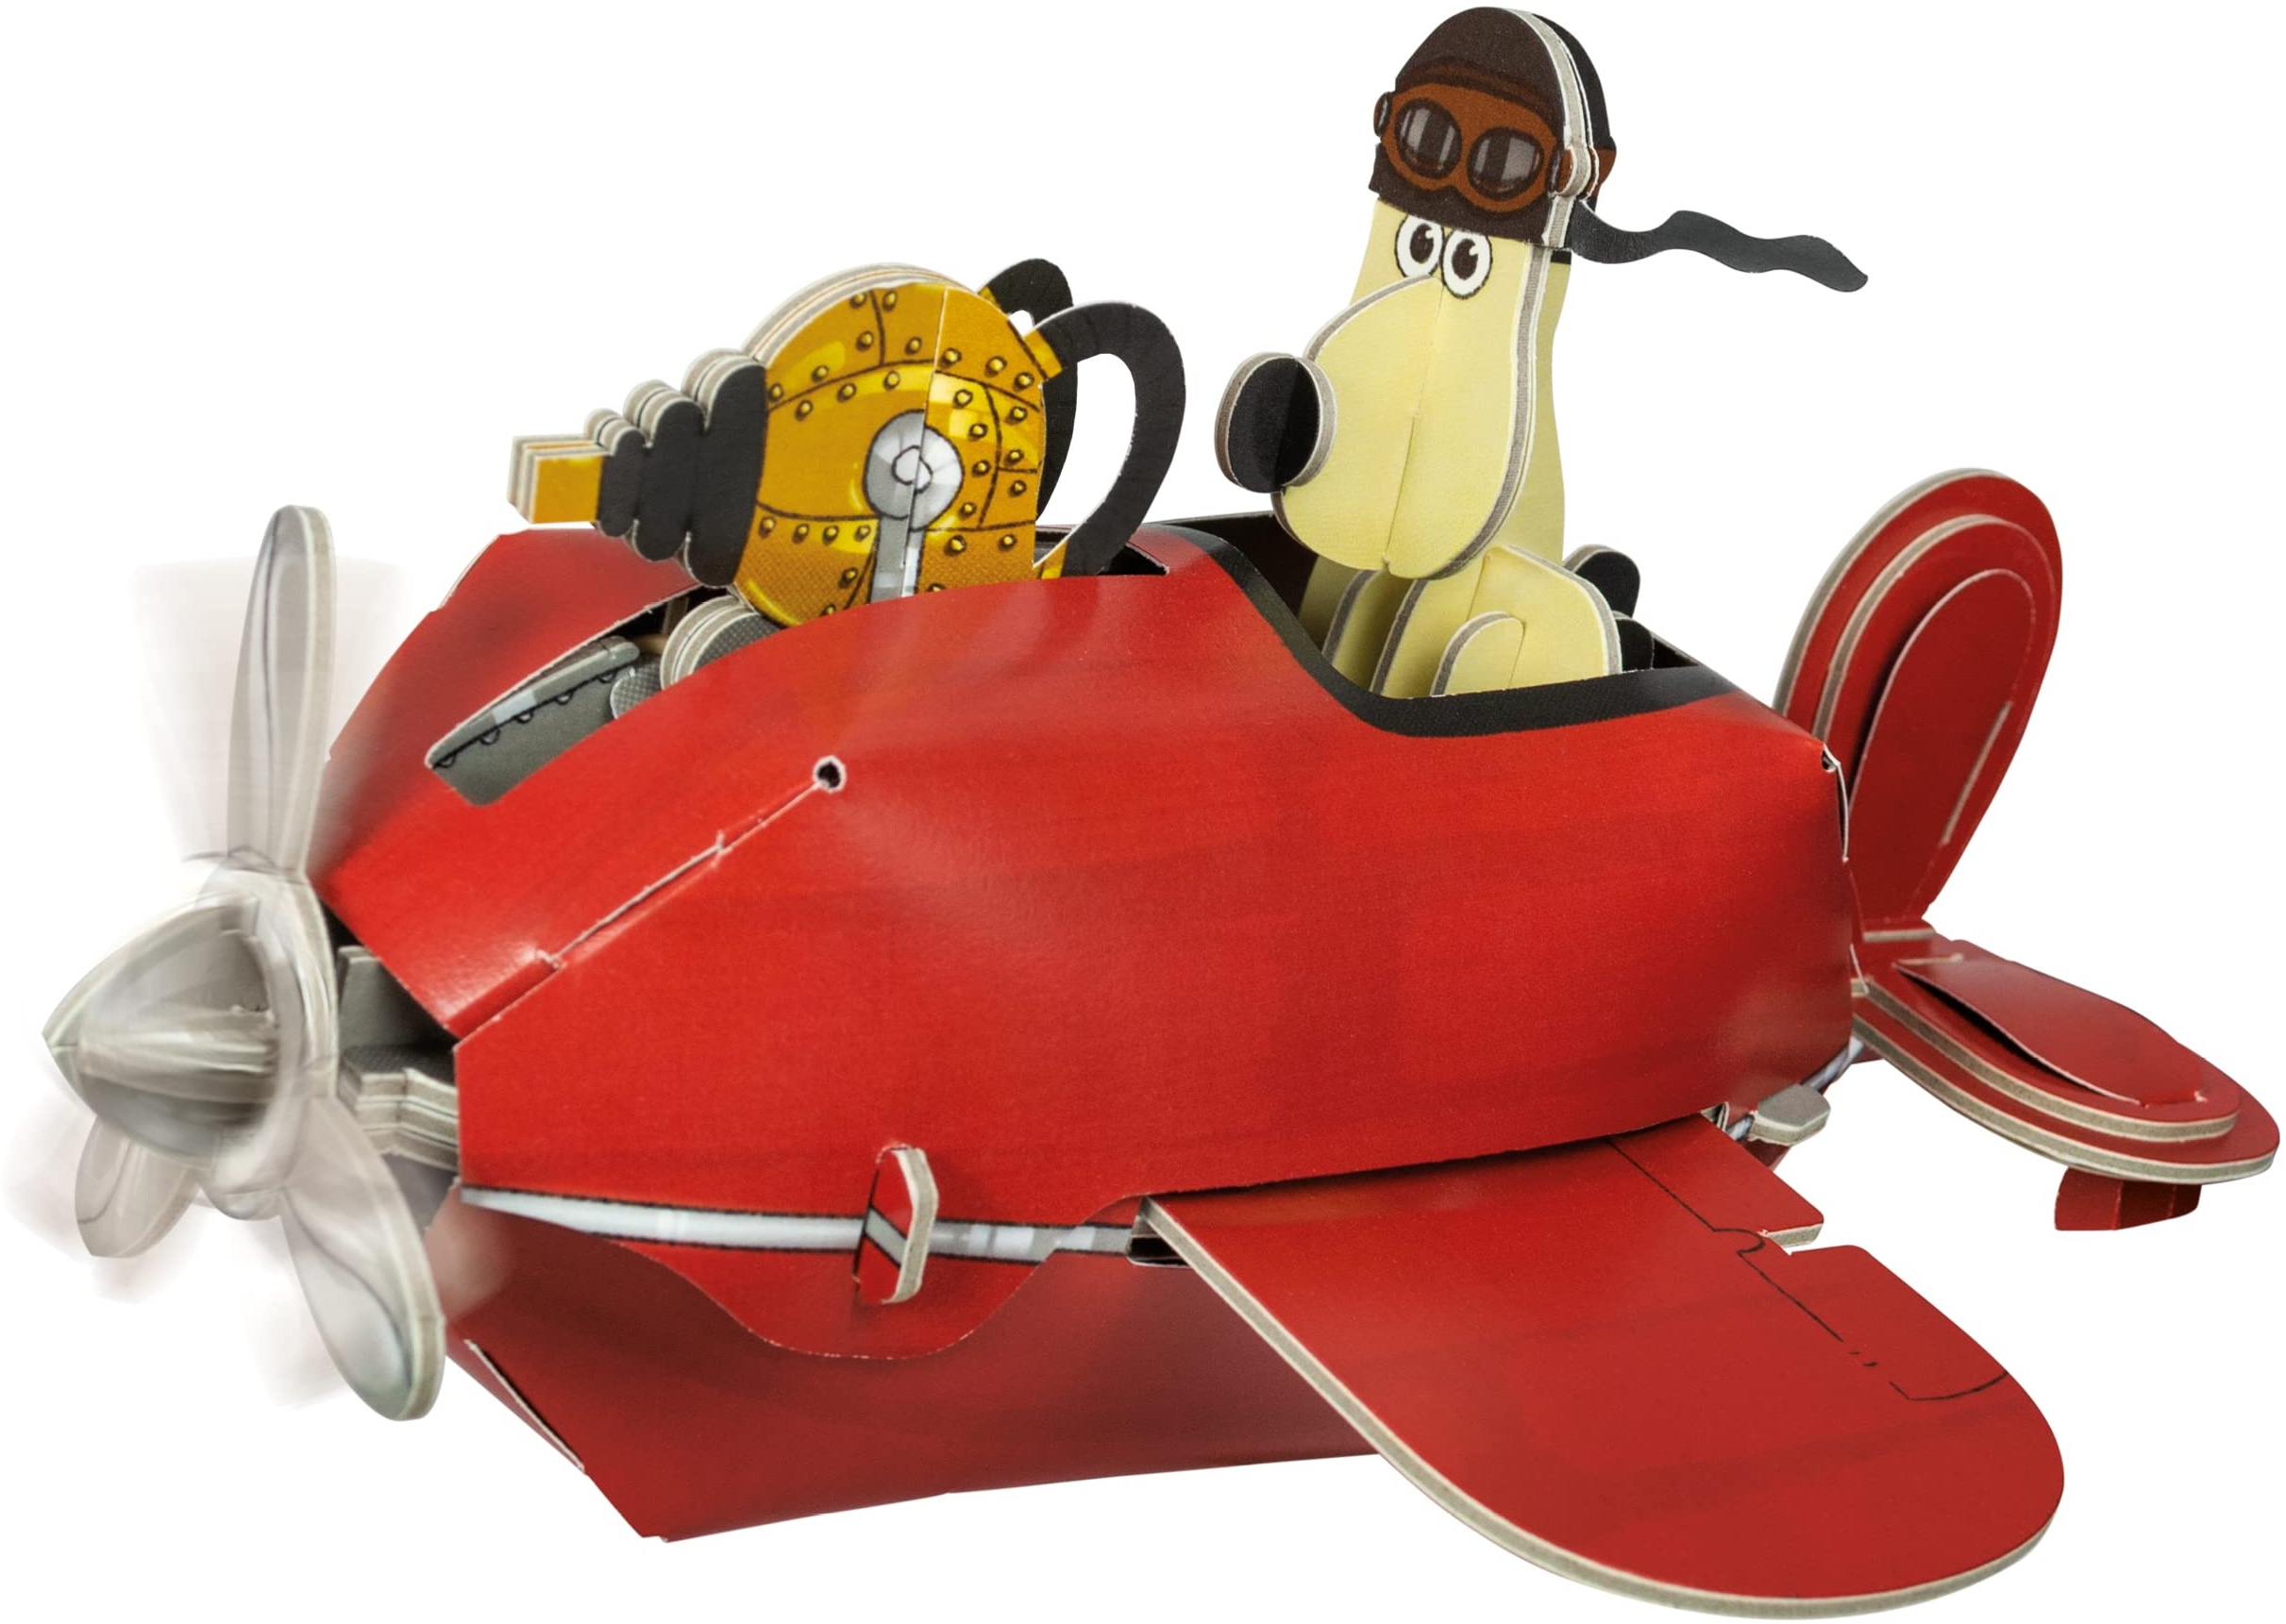 Build Your Own Wallace & Gromit Sidecar Plane – Eine gründliche Rasur – Umweltfreundliches Karton-Bastelset – ab 10 Jahren